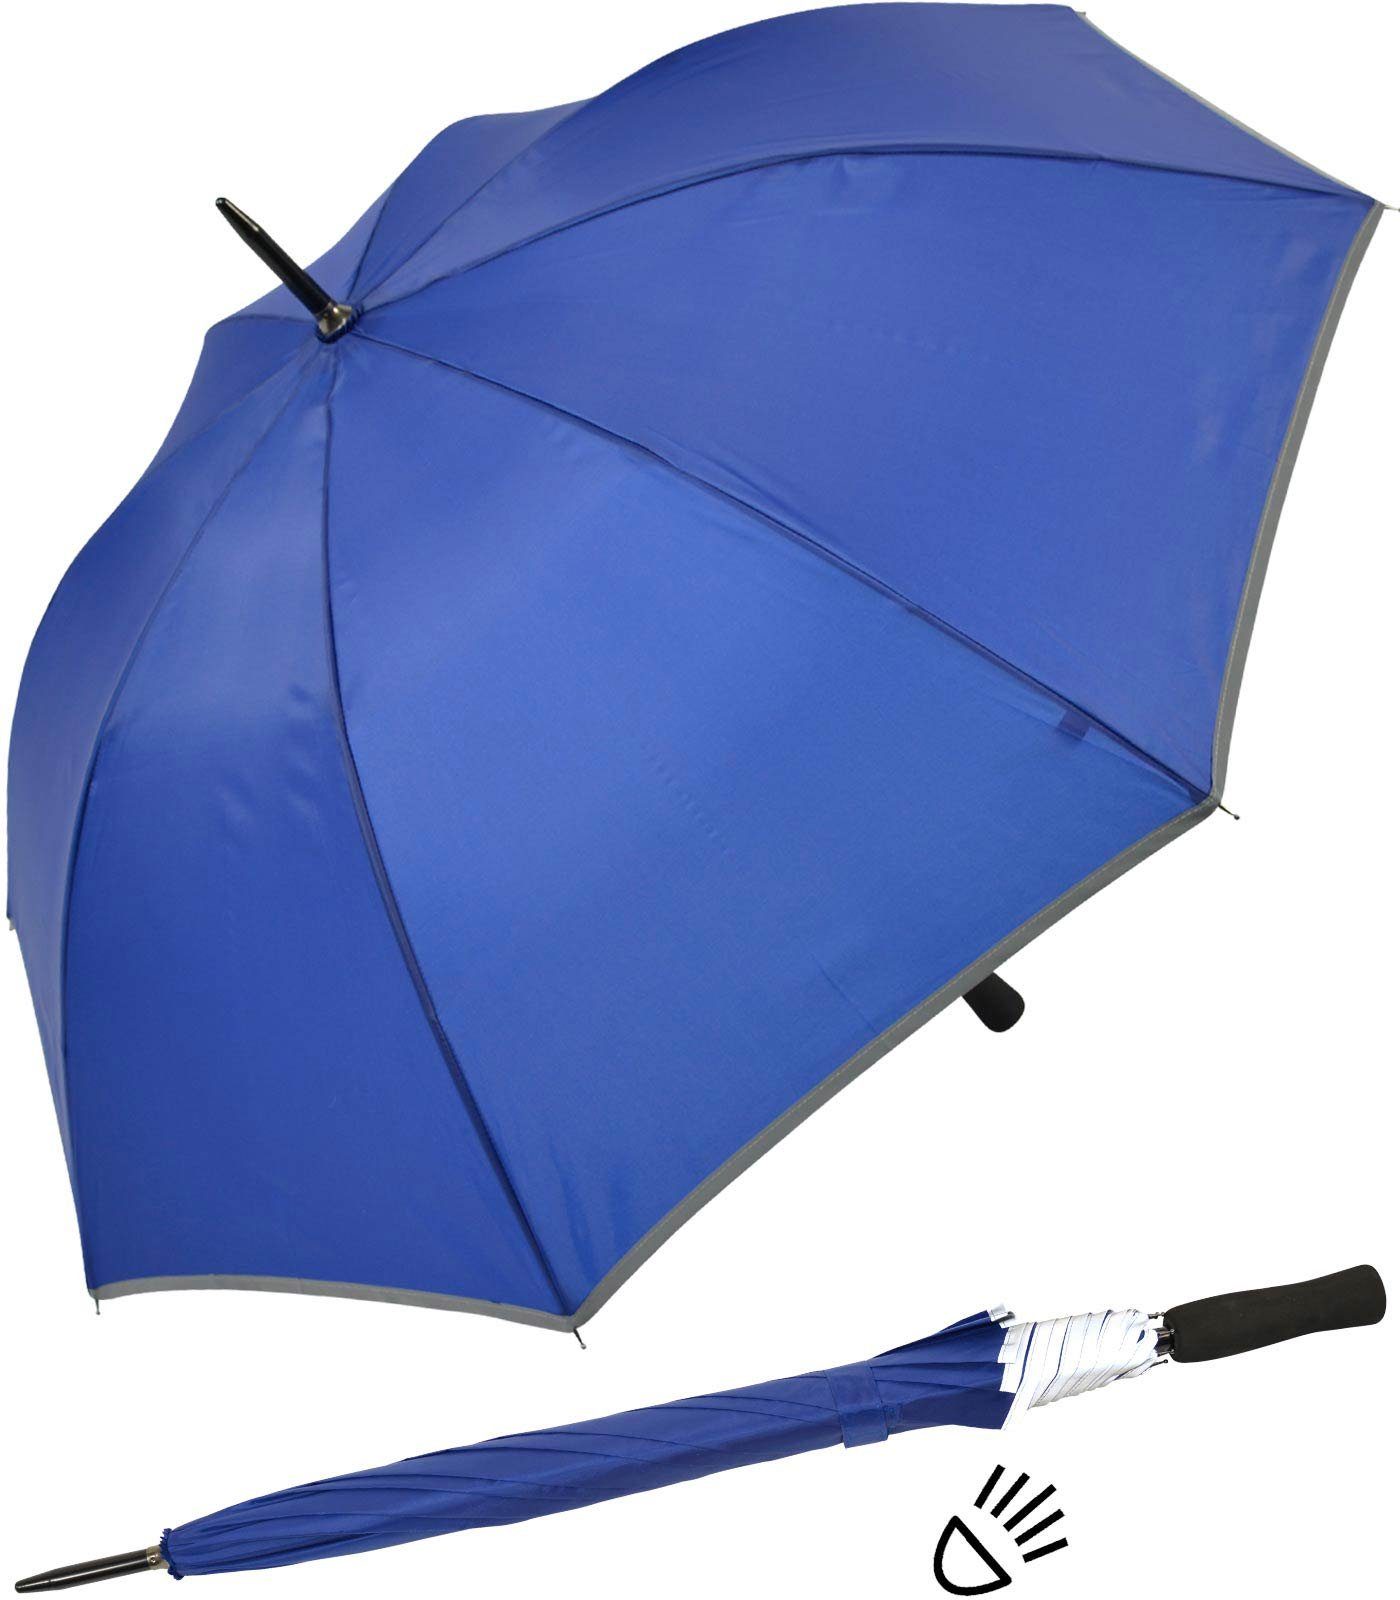 Impliva Stockregenschirm Falcone® Reflex Fiberglas reflektierende Borte, leichter reflex Sicherheitsschirm blau